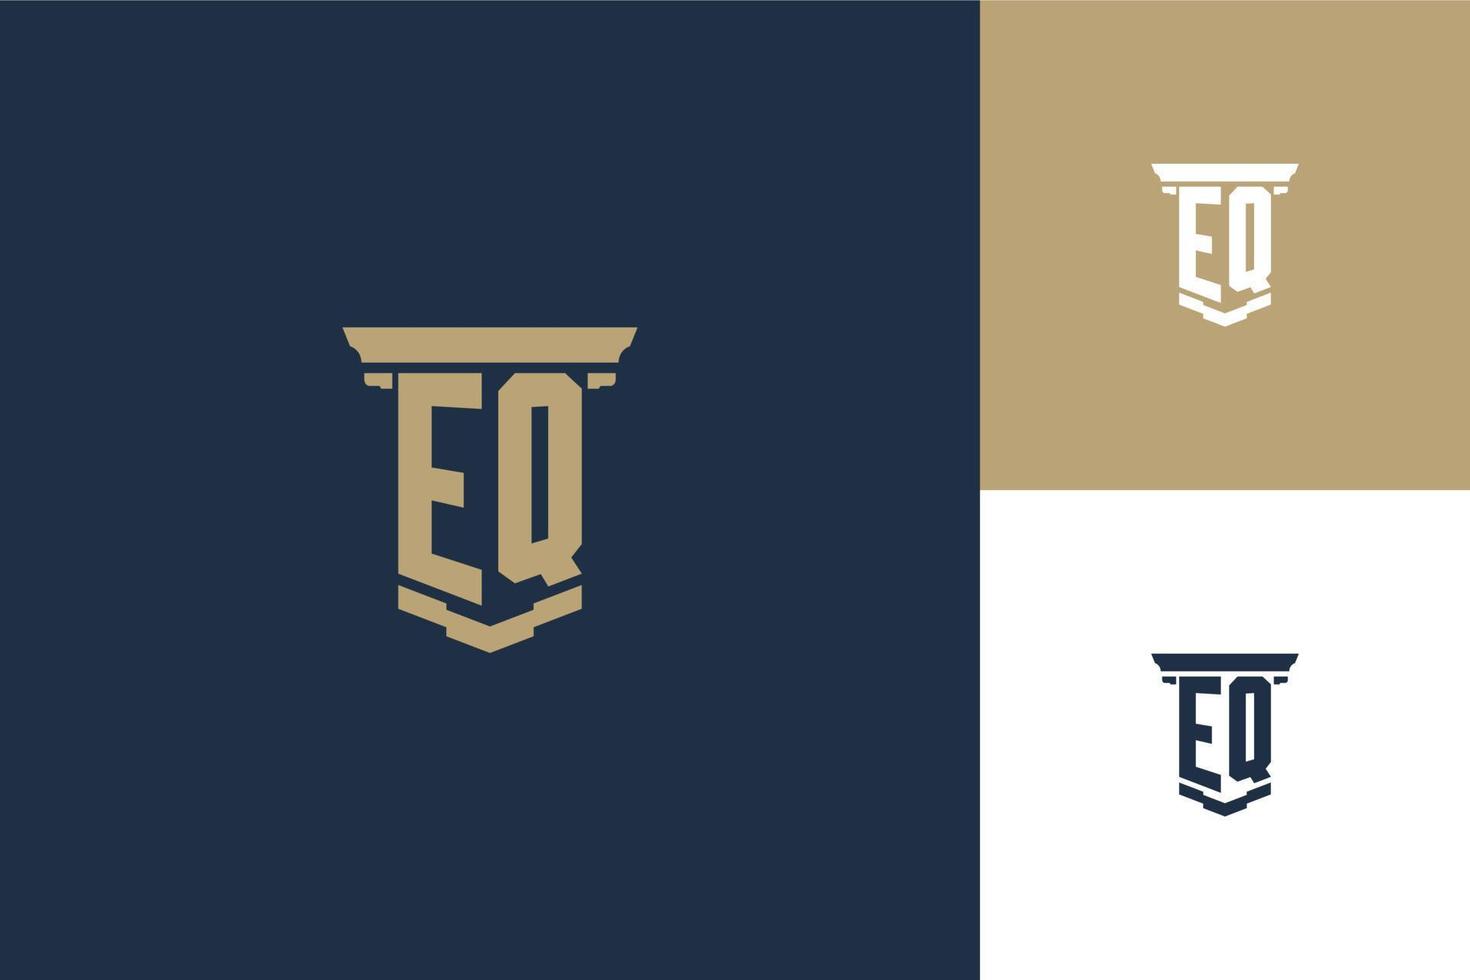 eq-Monogramm-Initialen-Logo-Design mit Säulensymbol. Logo-Design für Anwaltsrecht vektor